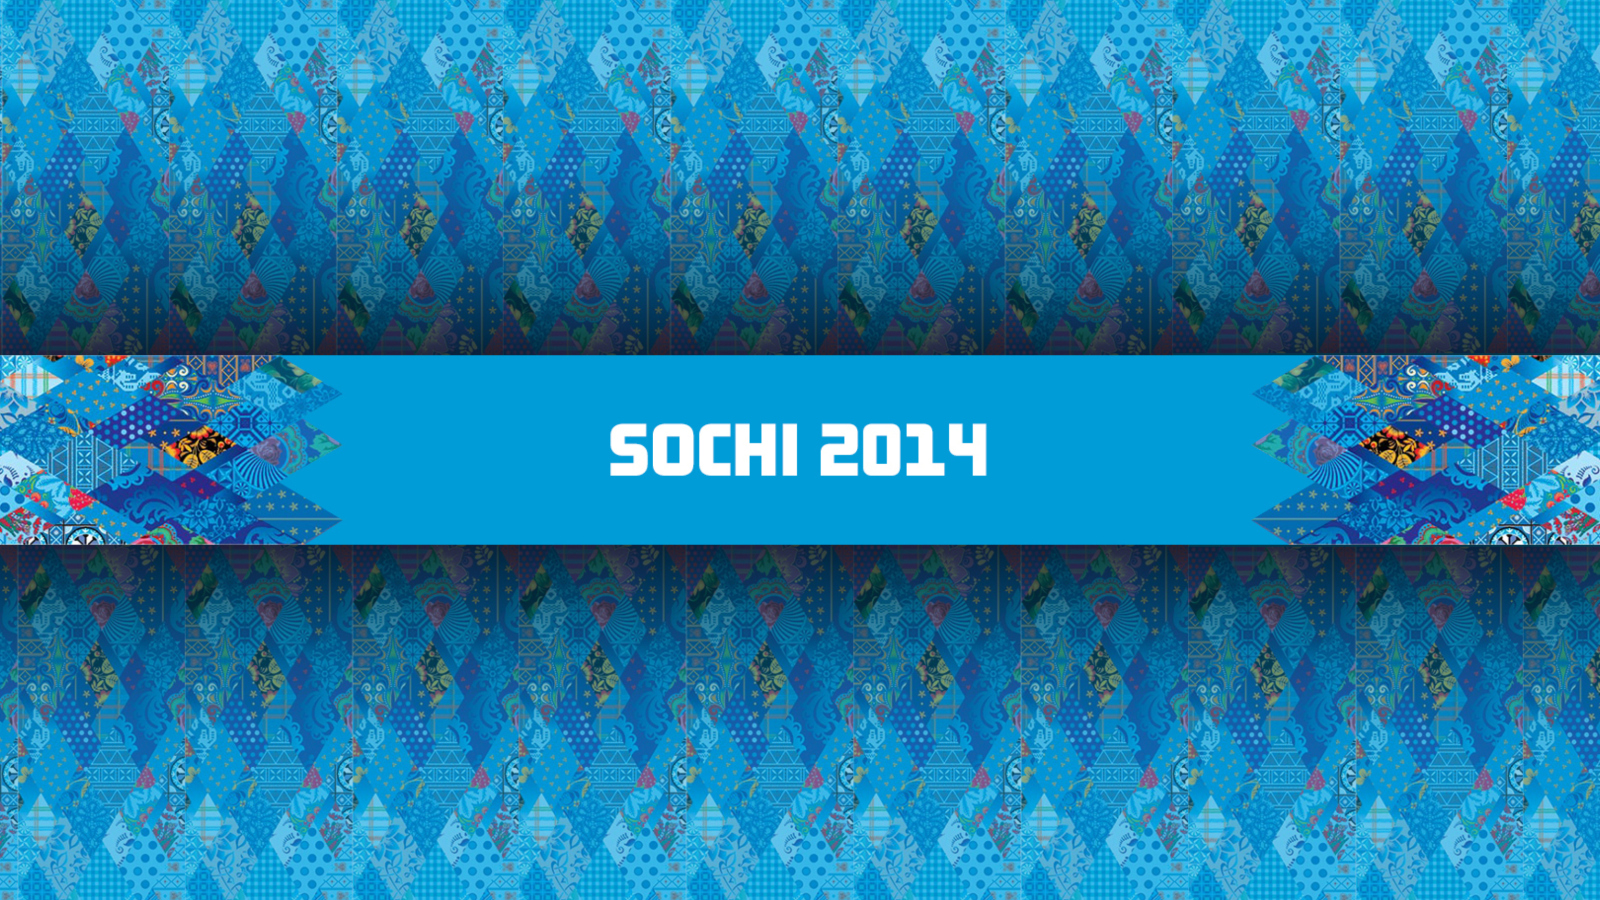 Sochi 2014 wallpaper 1600x900